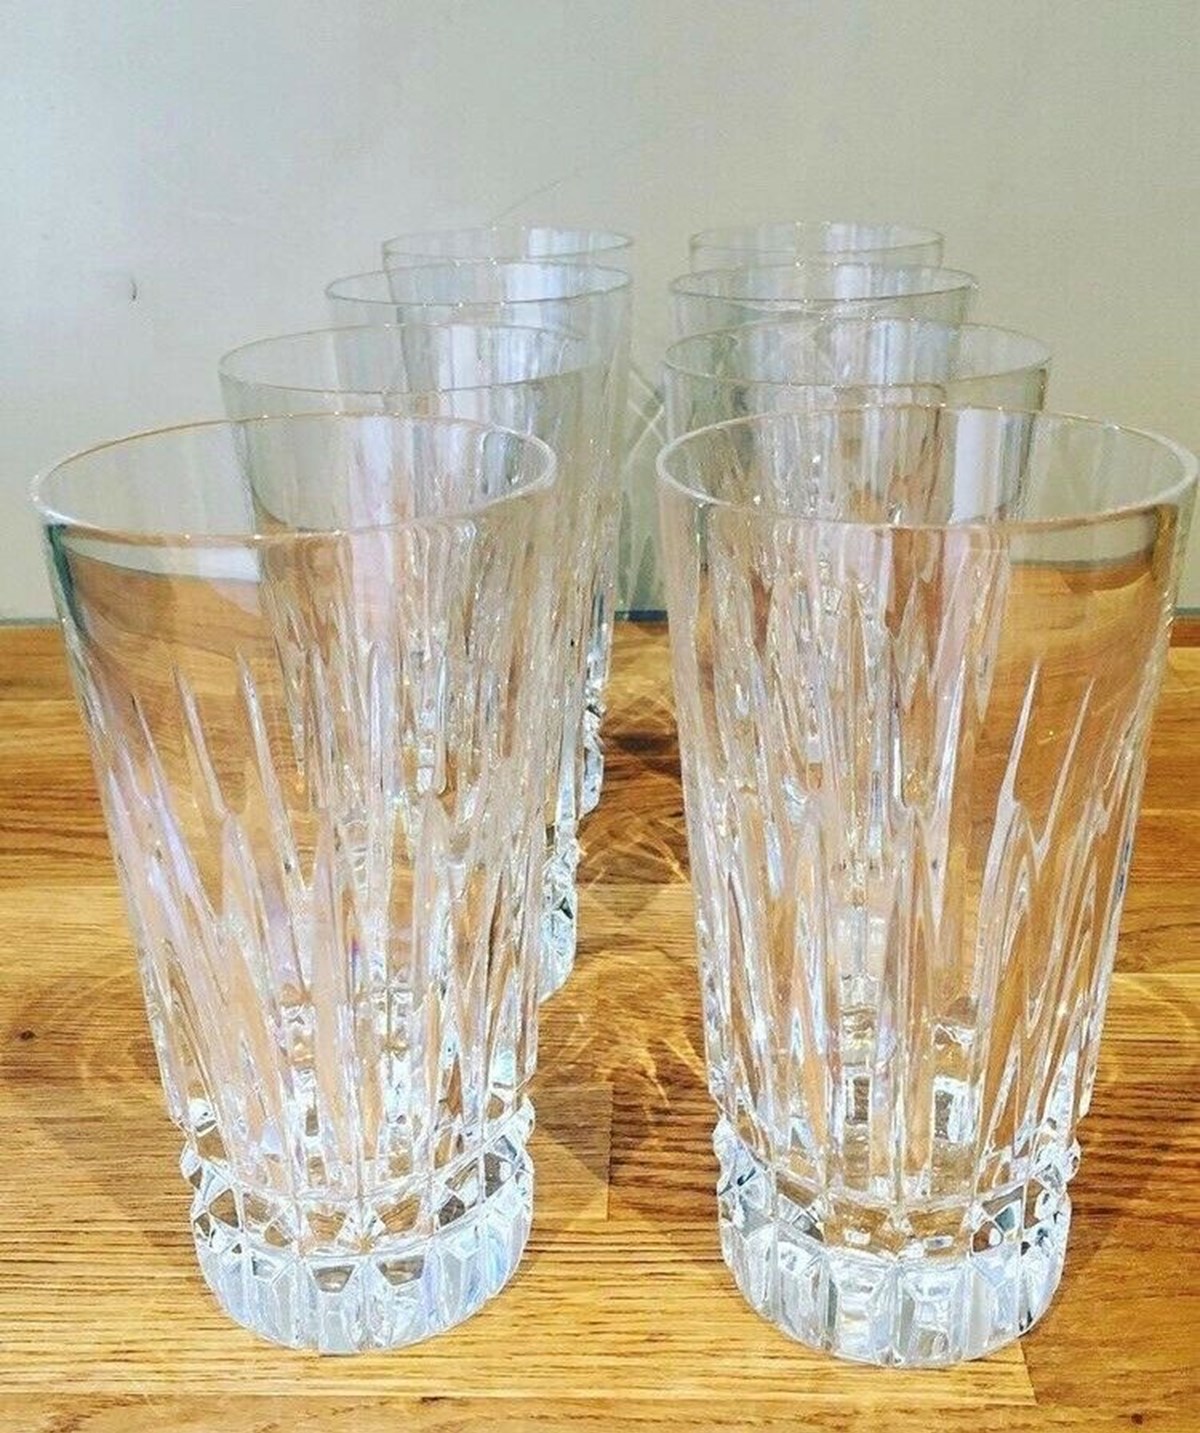 De flotte gamle glas fra Frankrig sælges samlet for 400 kroner, men kan også købes til 75 kroner stykket af Vibeke fra Hvidovre.